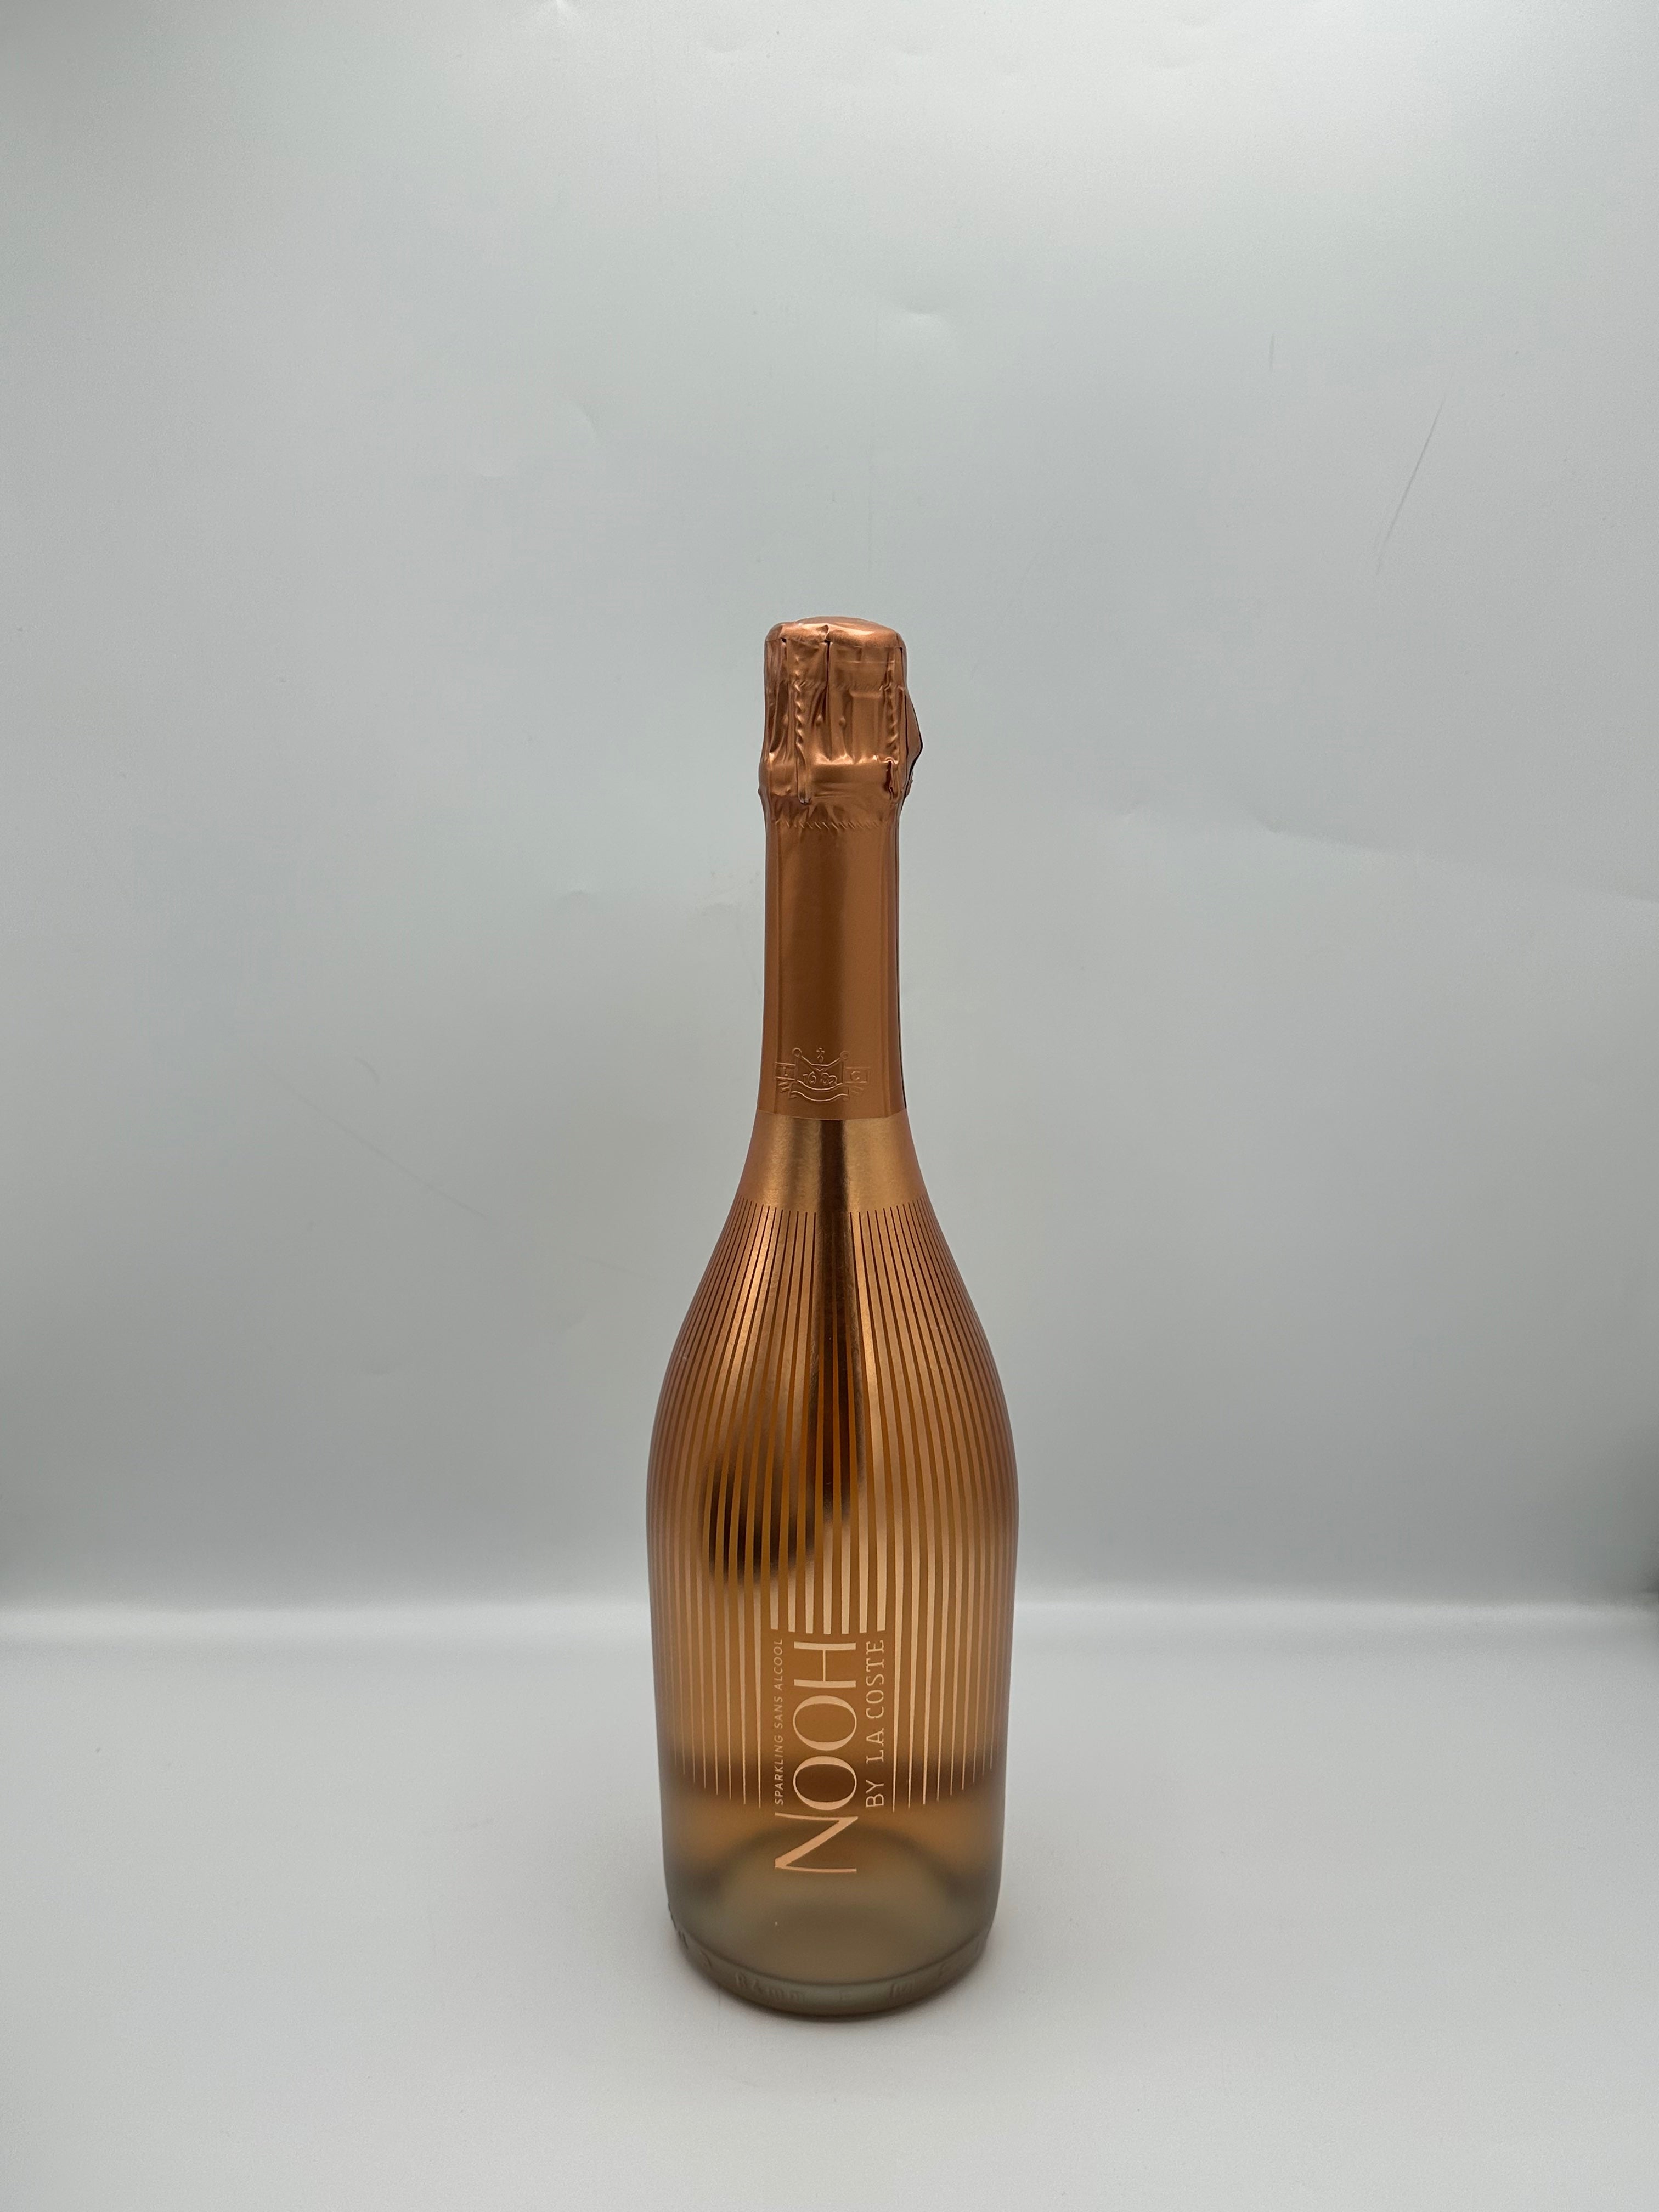 Sparkling Rosé Alcohol-Free “Nooh” - Château La Coste 